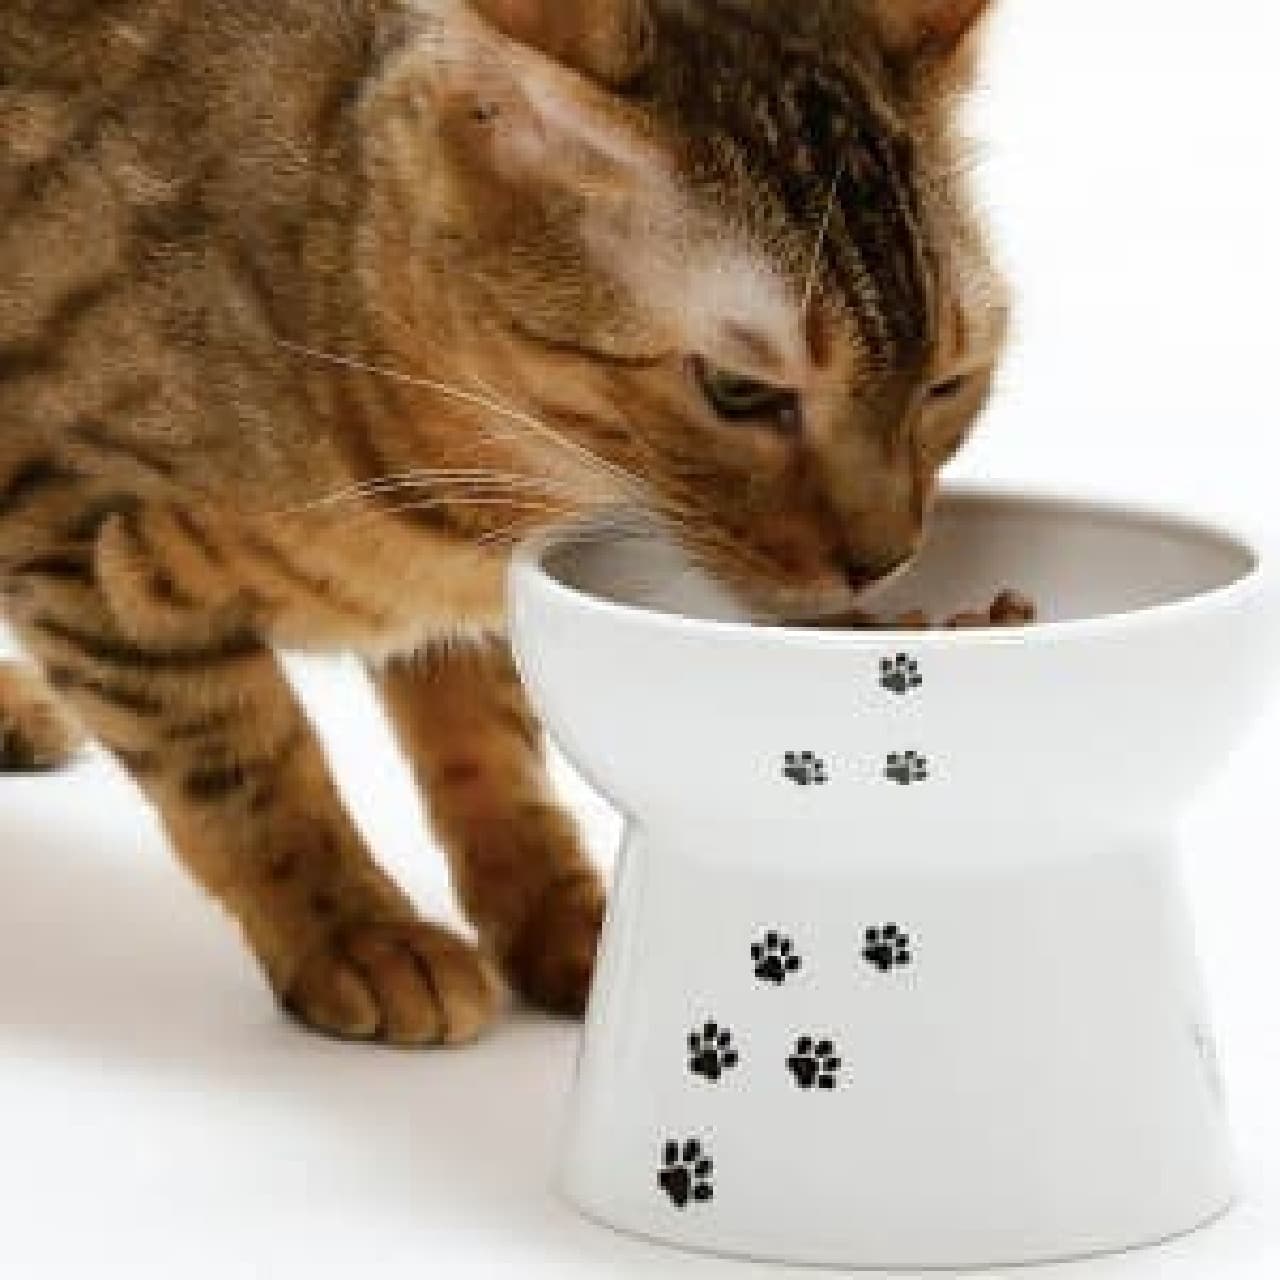 比較的食道がまっすぐな動物であるネコが食べやすいようデザインされた、ネコ用のフードボウル